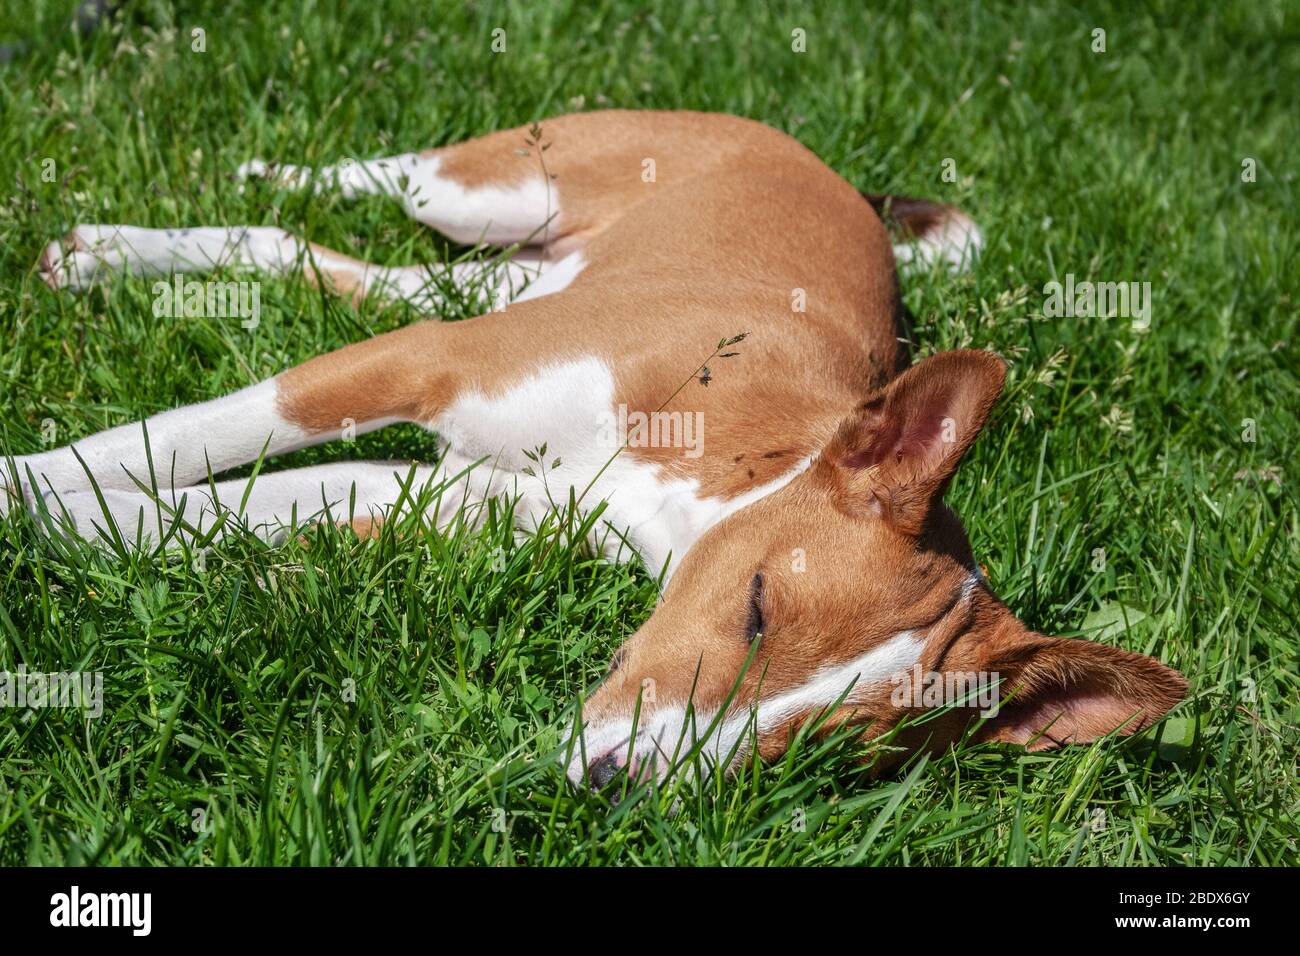 Basenji dog is lying in a green grass in the hot summer sun Stock Photo